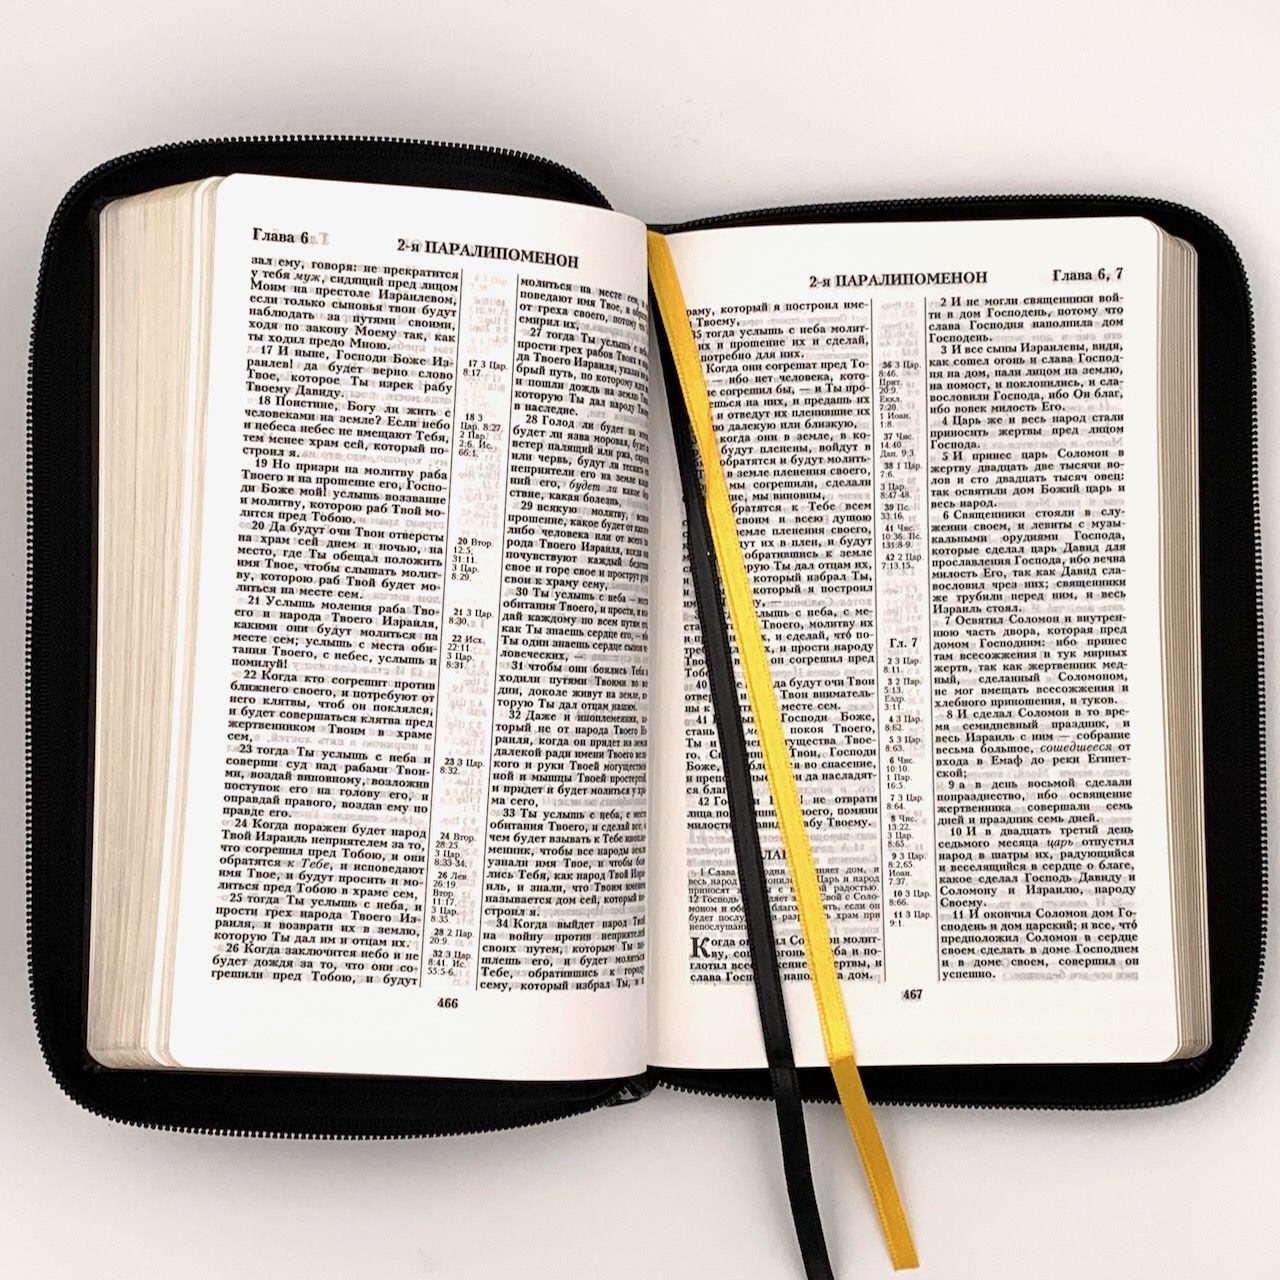 Библия 055z код B3 дизайн "слово Библия" кожаный переплет на молнии, цвет черный, средний формат, 143*220 мм, параллельные места по центру страницы, белые страницы, золотой обрез, крупный шрифт